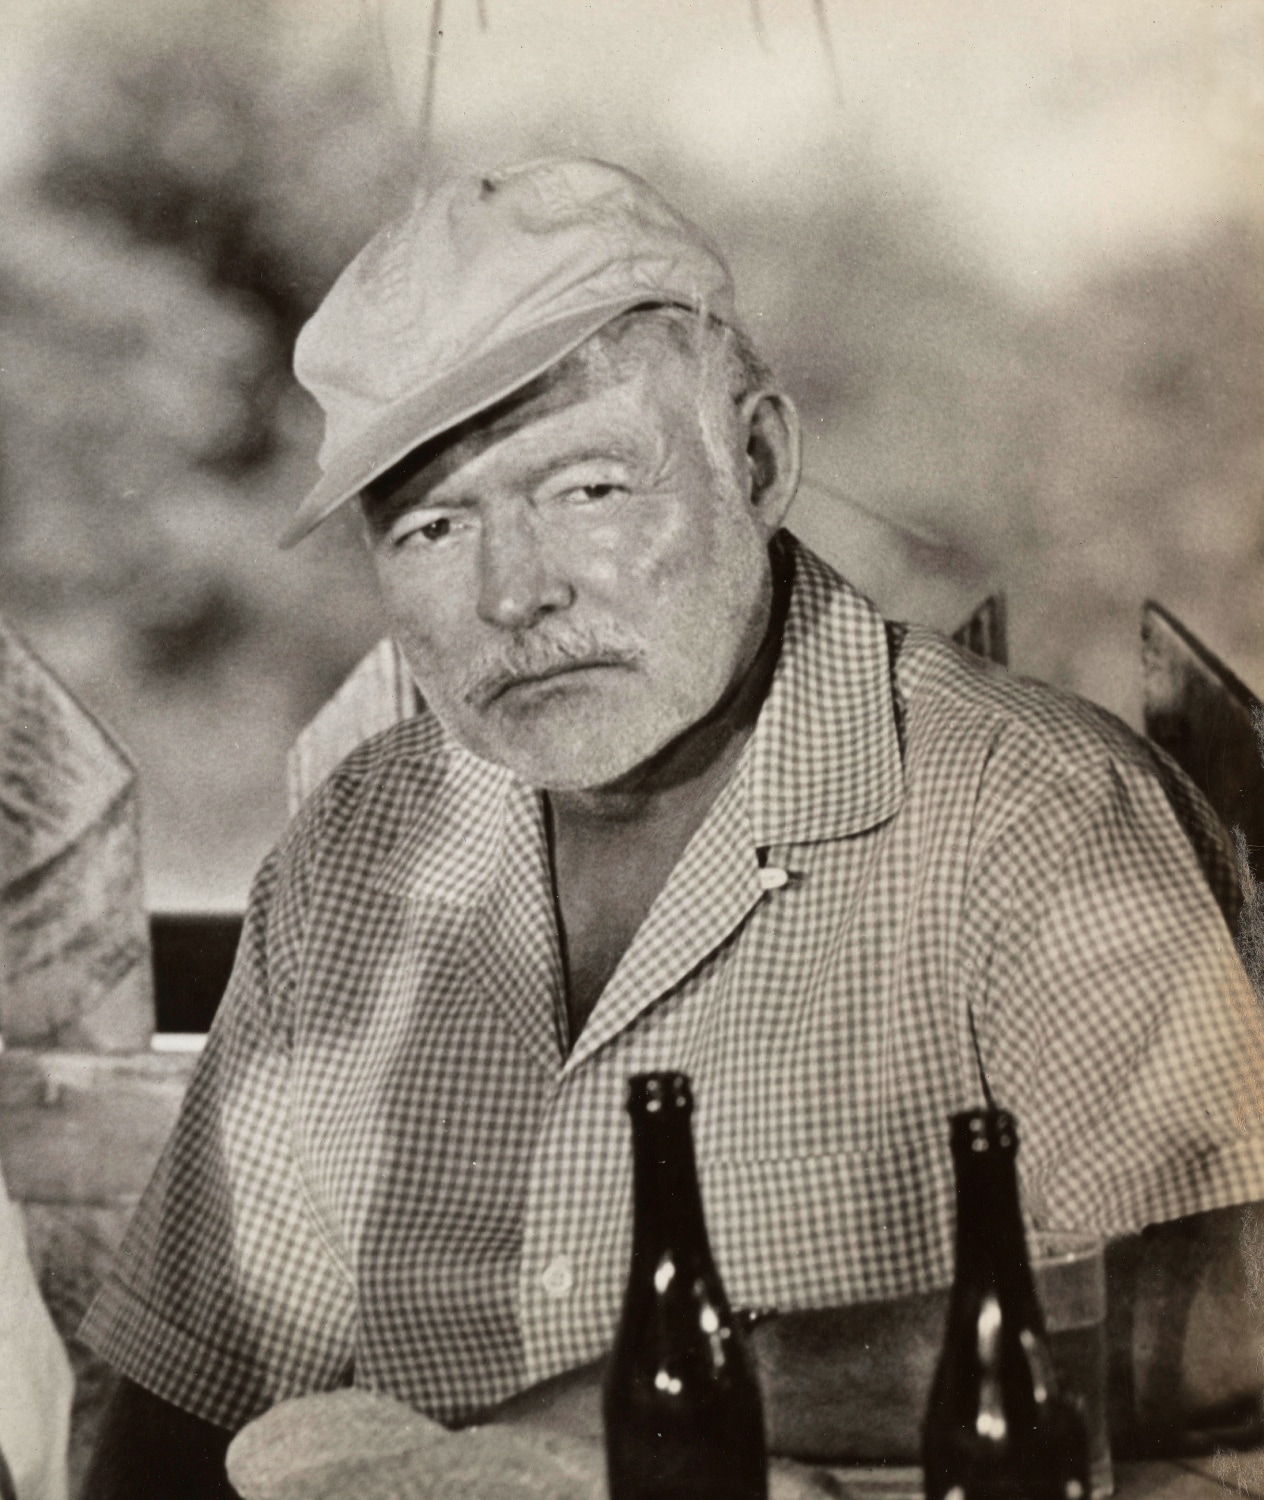 Ernest Hemingway su William Faulkner - "Povero Faulkner. Davvero crede che i paroloni suscitino forti emozioni?"